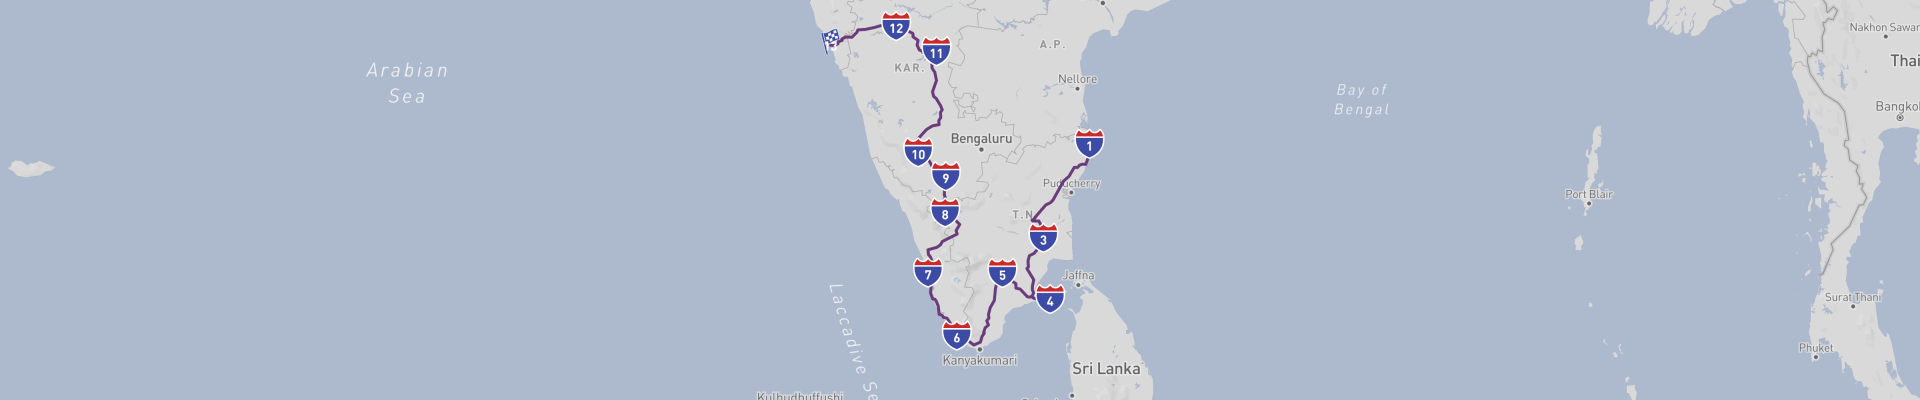 Grand tour de l'Inde du Sud